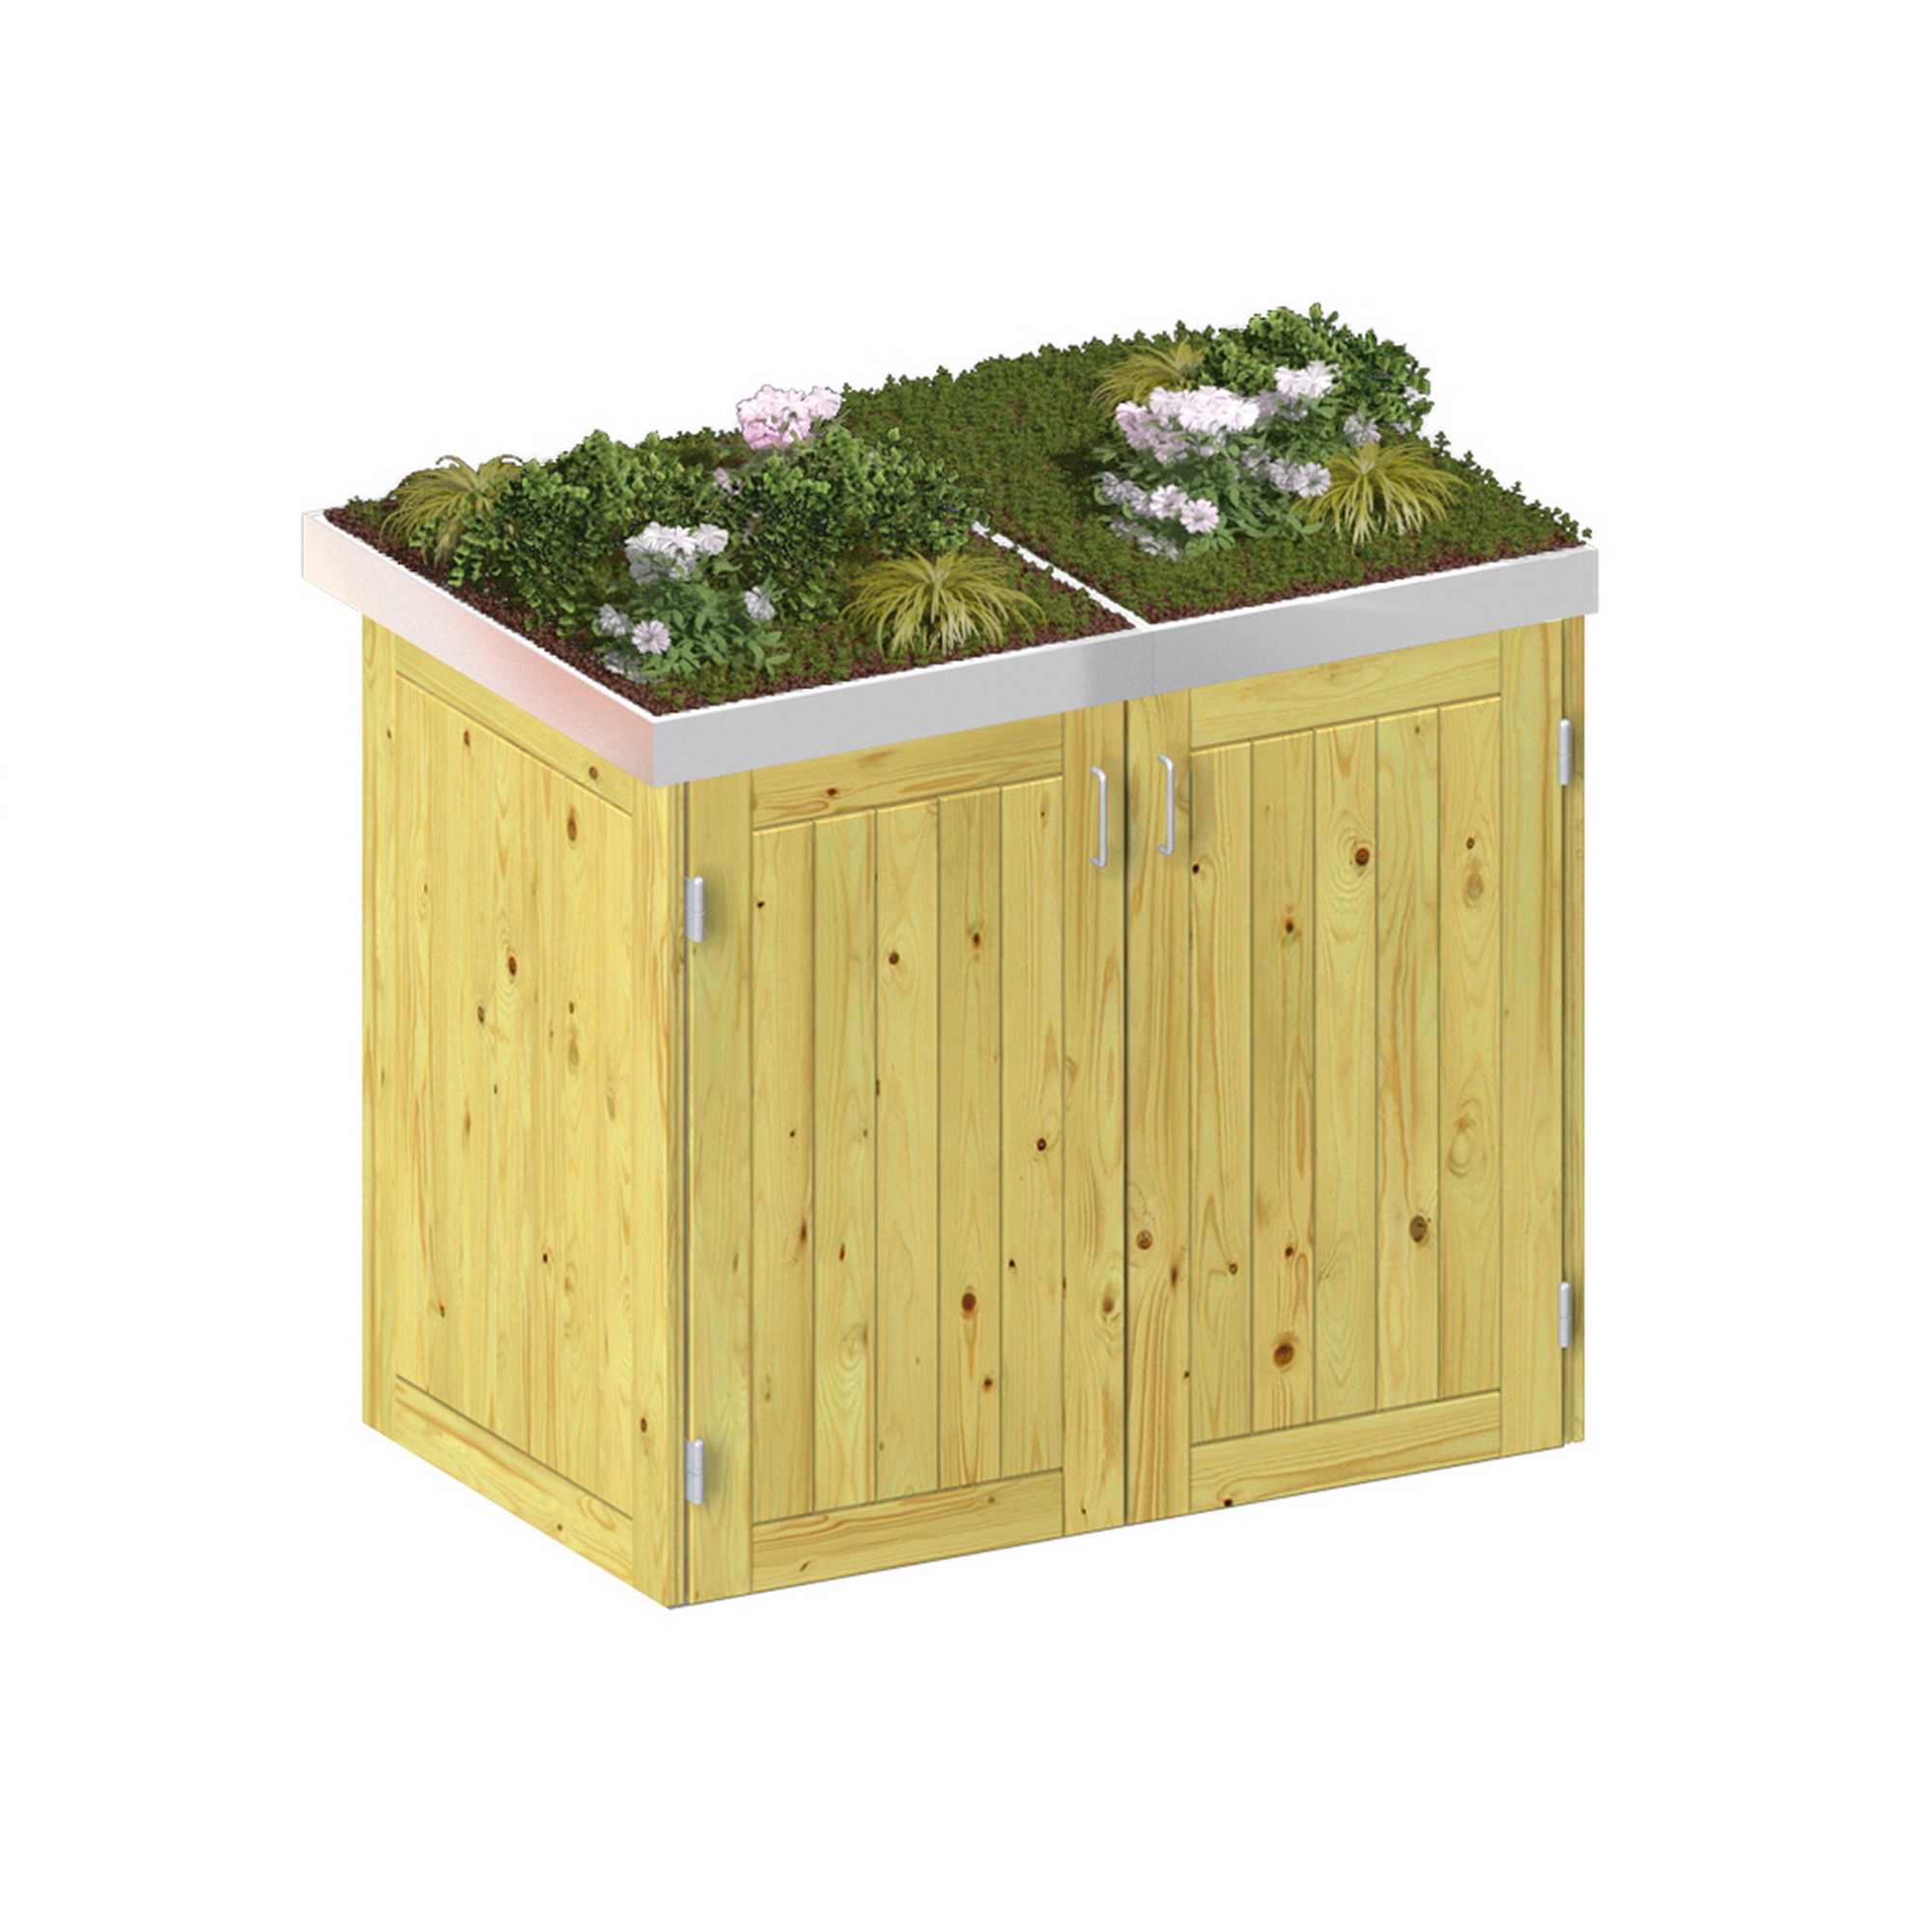 Mülltonnenbox 'Binto' mit Pflanzkasten naturfarben 150 x 129 x 90 cm + product picture